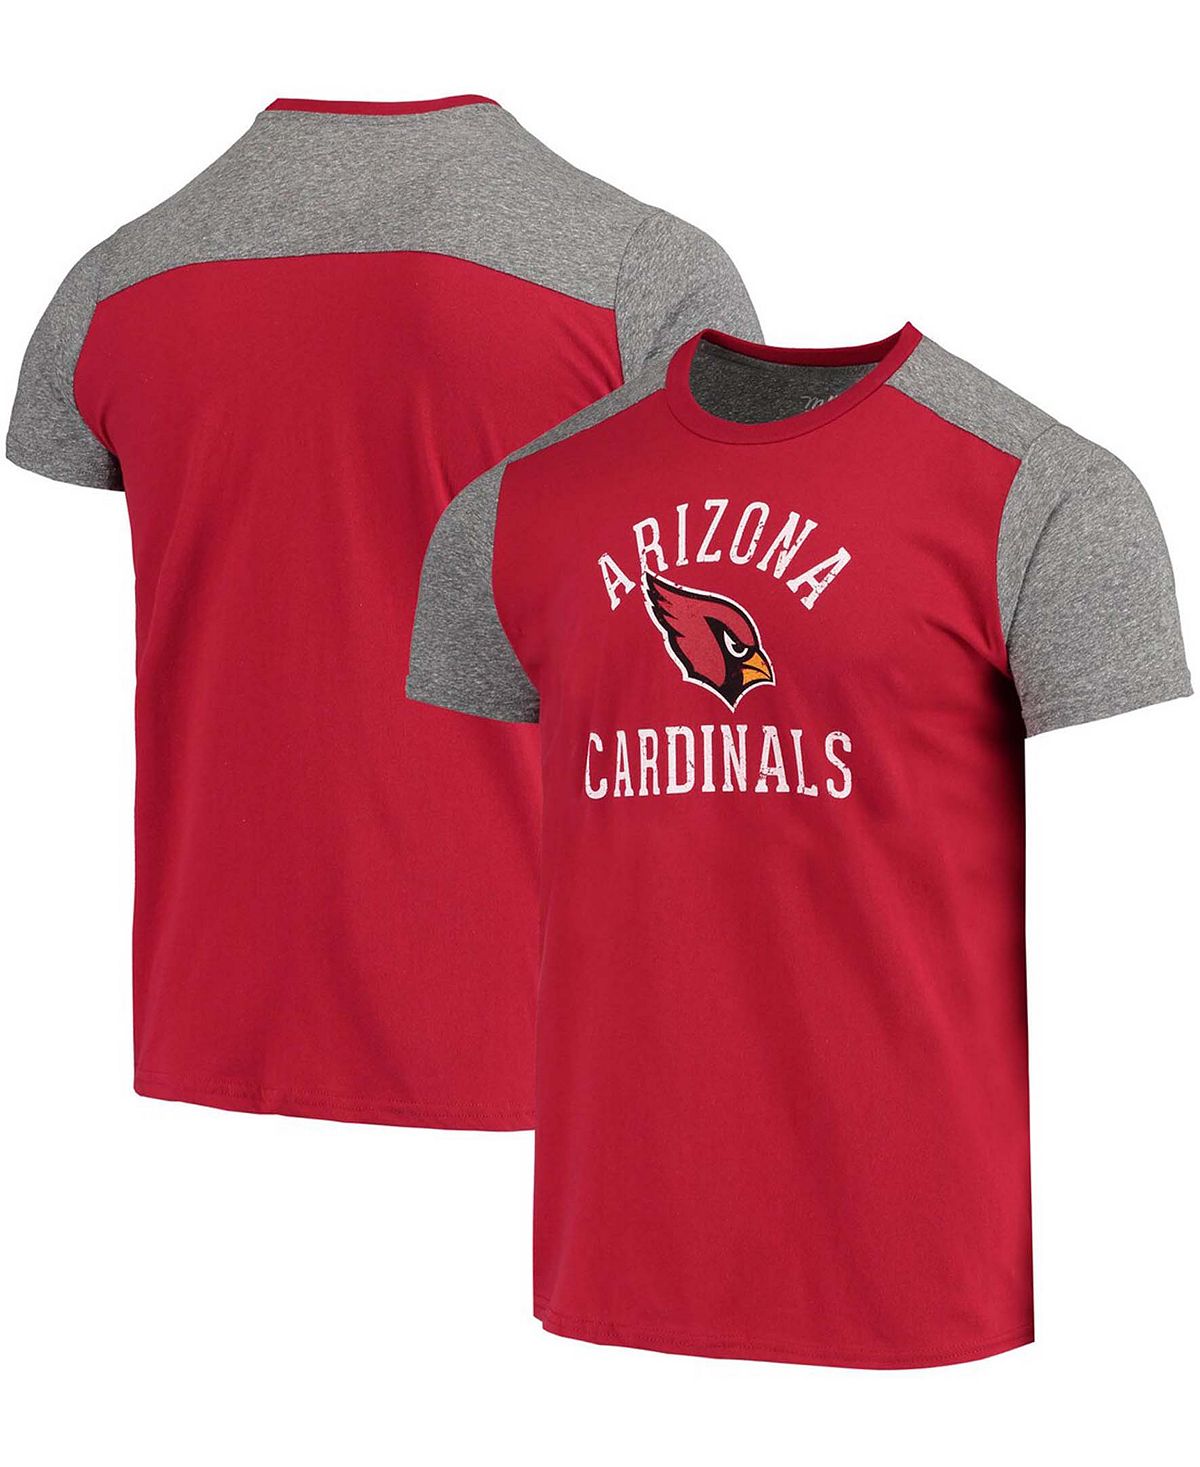 Мужская серая футболка cardinal arizona cardinals field goal slub Majestic, мульти футболка с карманами arizona cardinals tri blend cardinal majestic красный